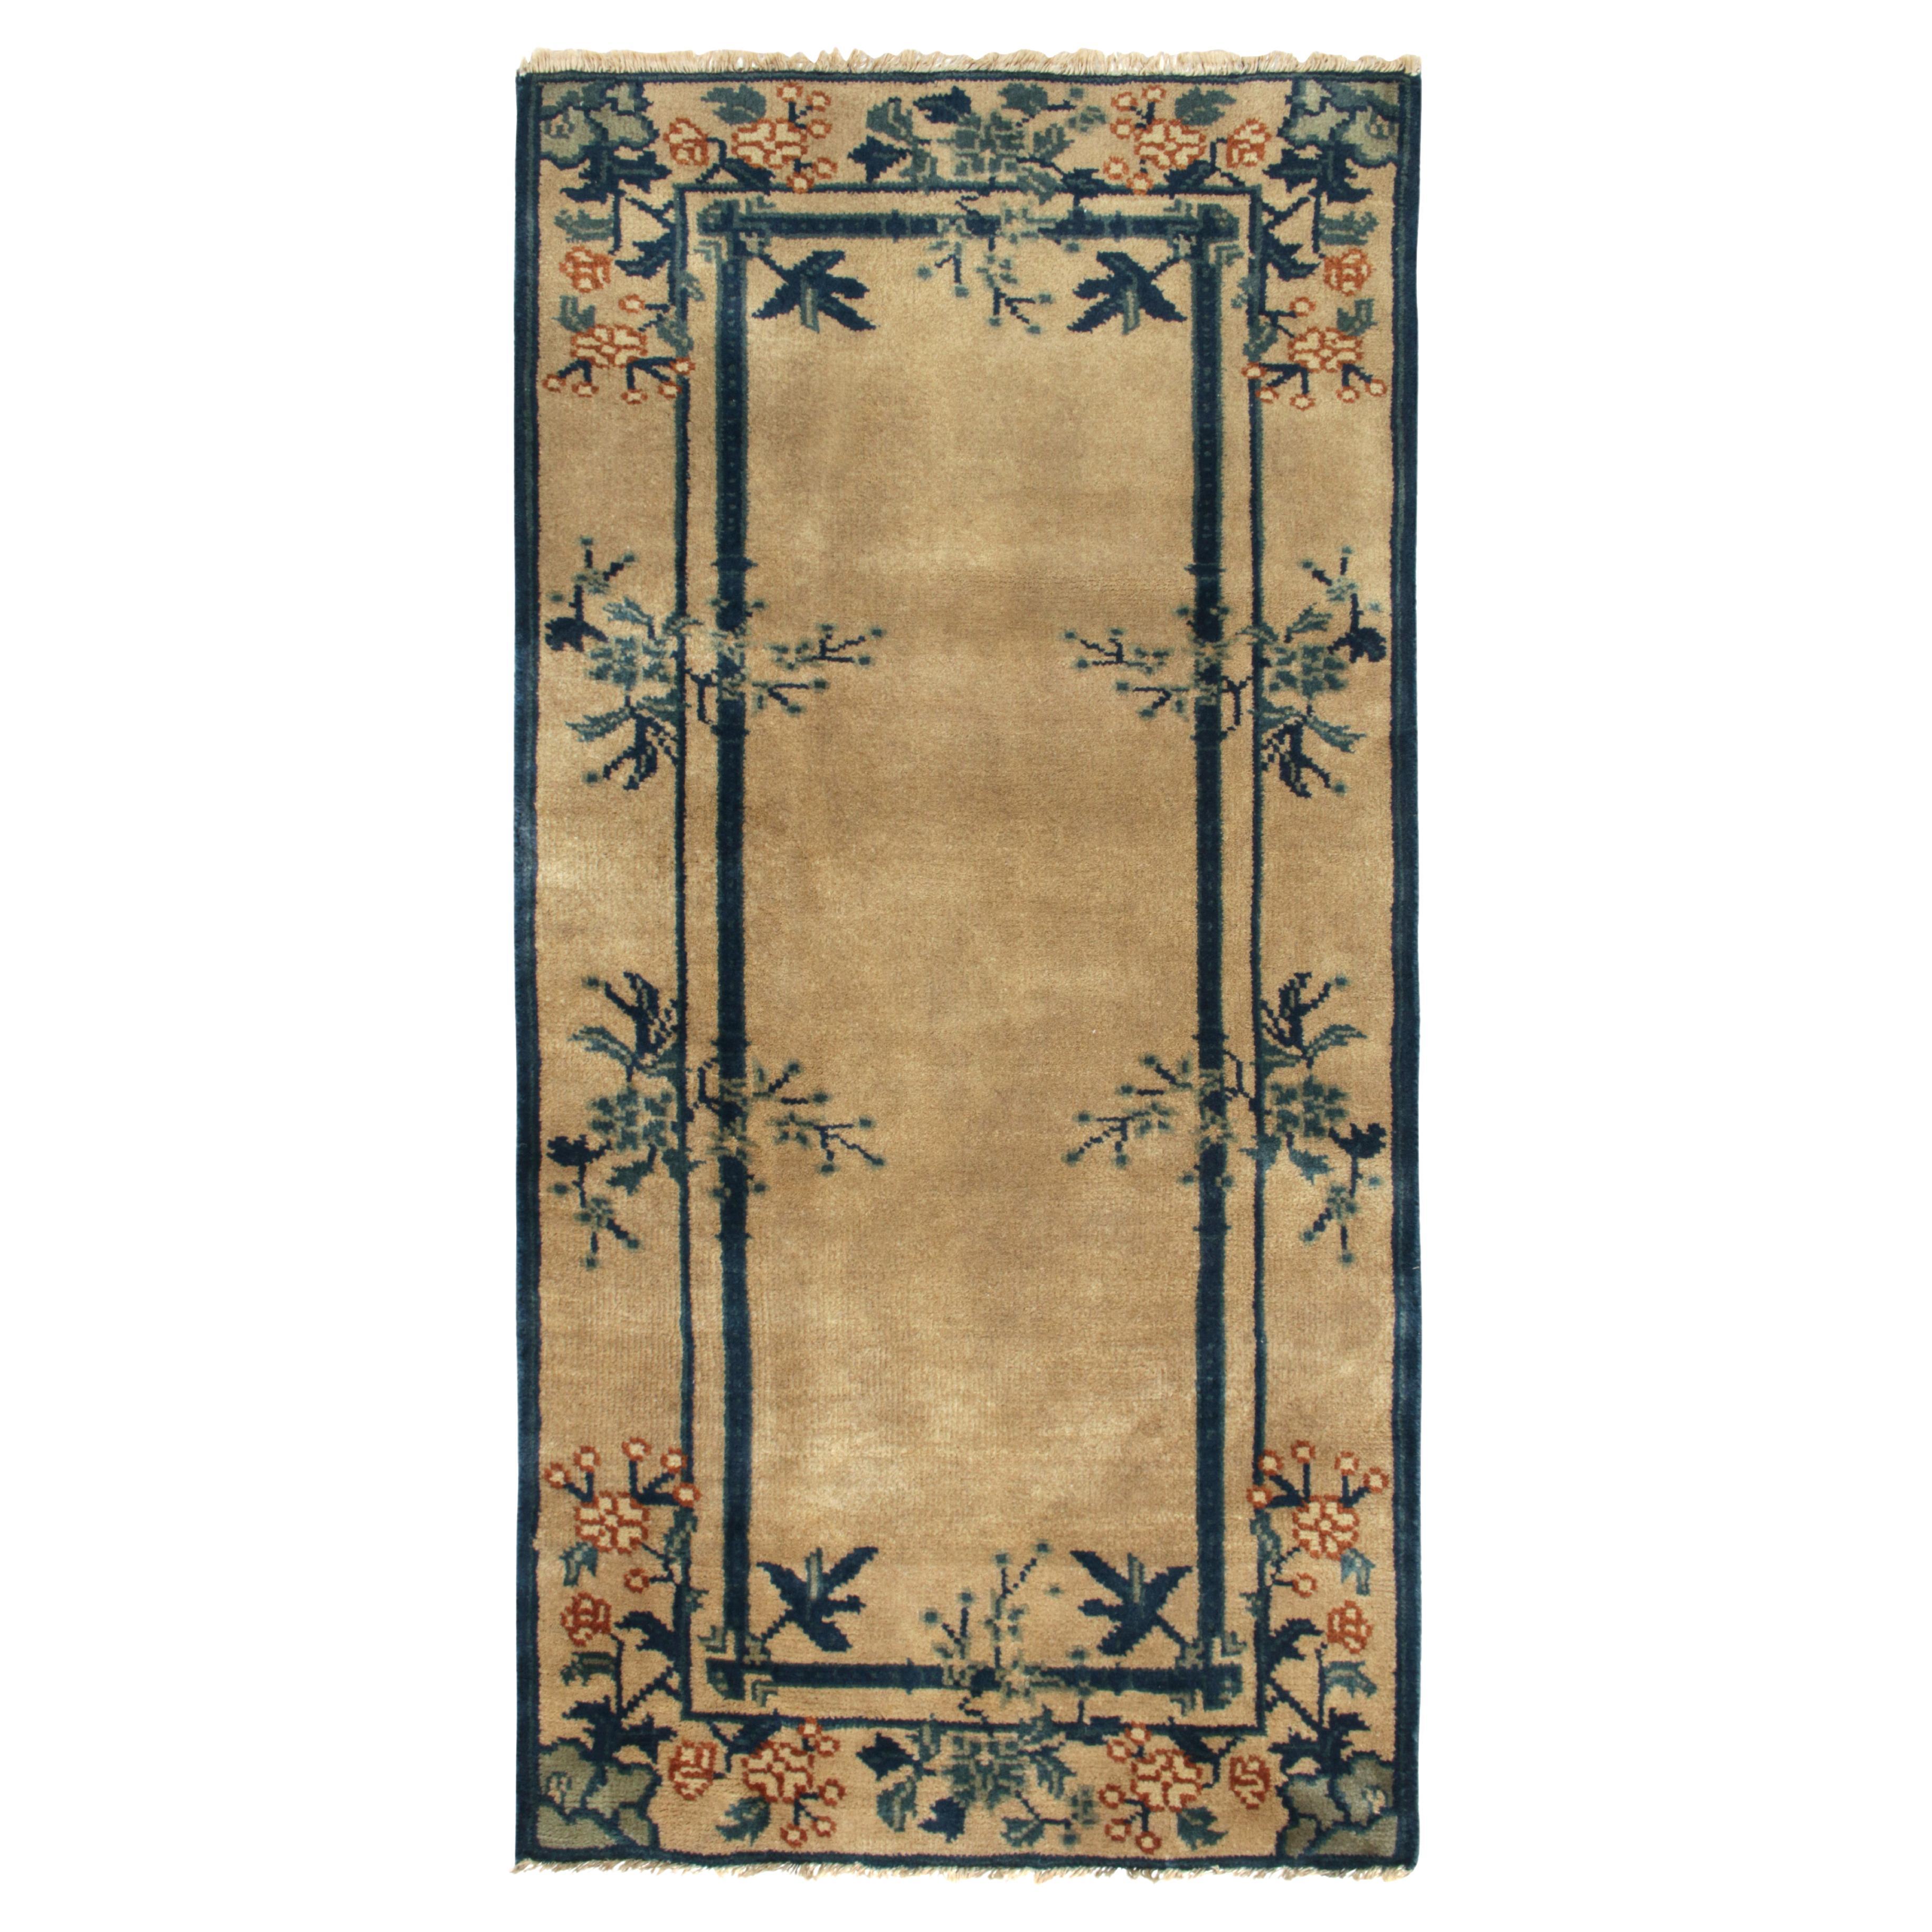 Chinesischer Deko-Teppich im Vintage-Stil in Beige, Blau und Grün mit Blumenmuster von Teppich & Kelim